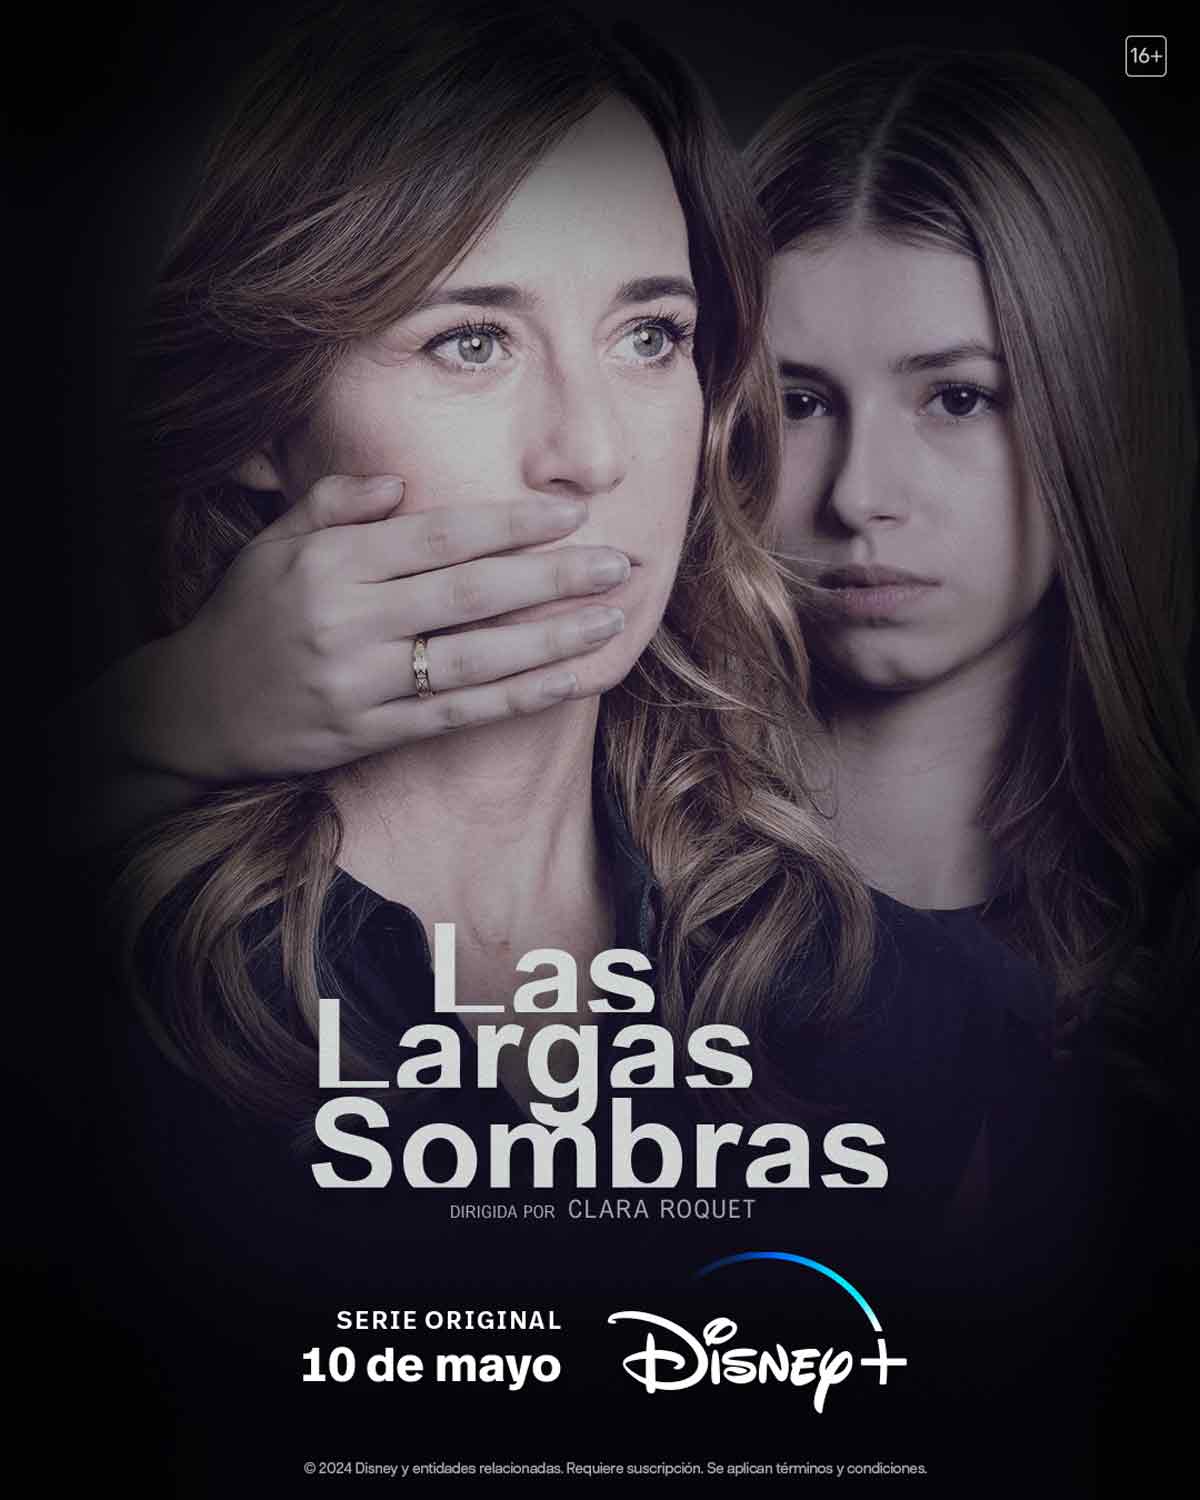 圖 久遠的陰影 Las largas sombras (雷) Disney+ 西班牙懸疑劇